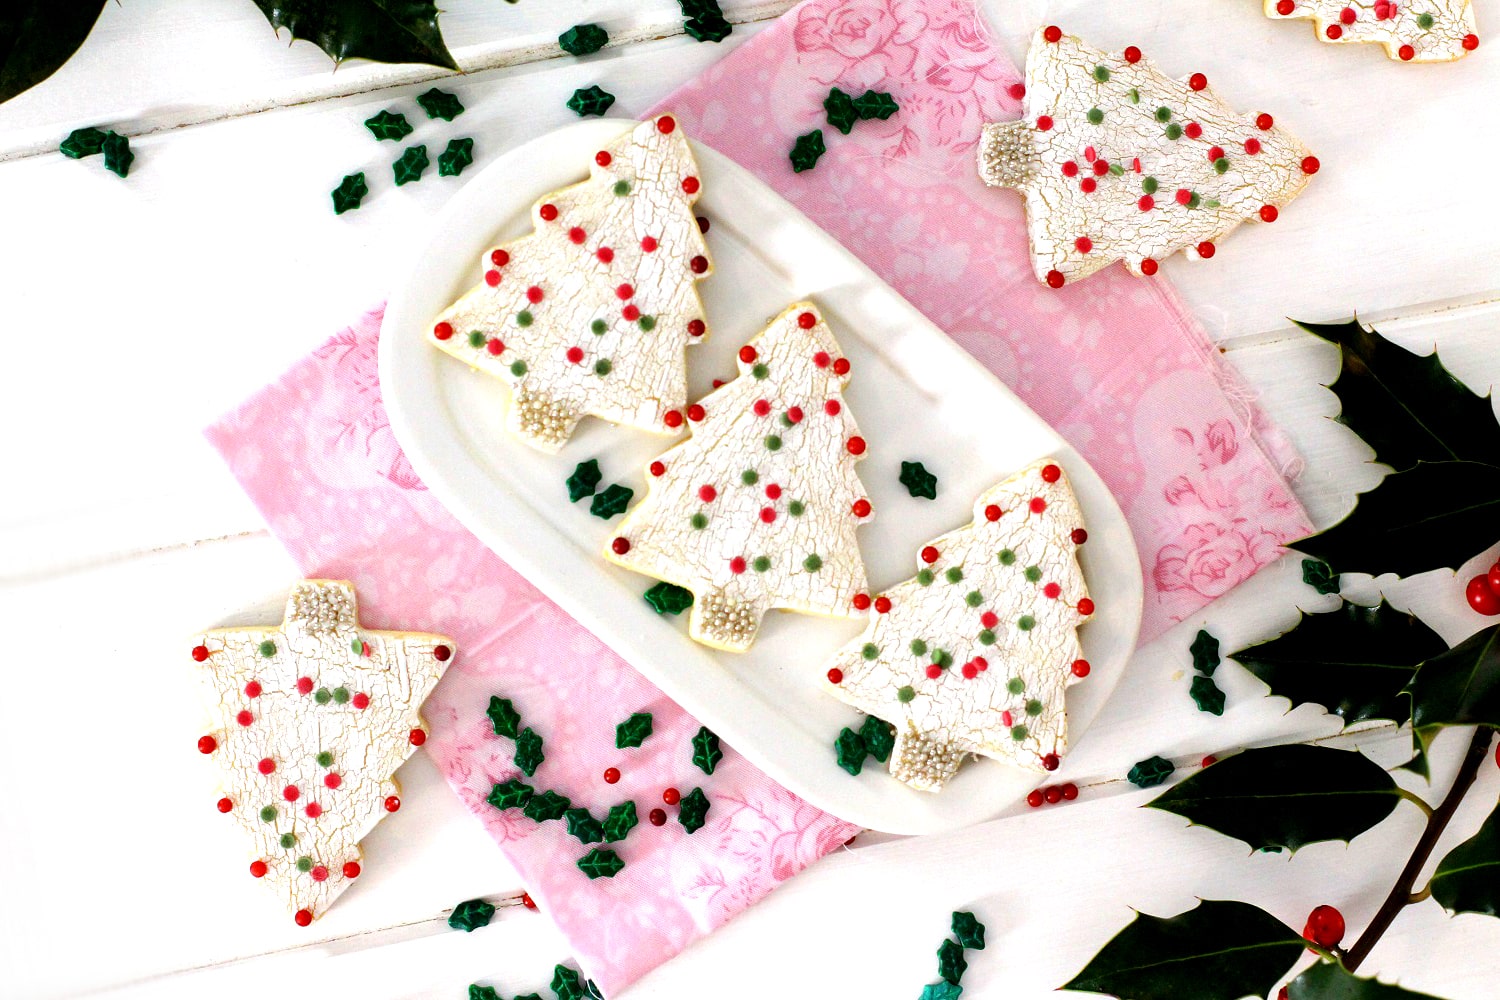 Foto de la receta de galletas de mantequilla decoradas para Navidad